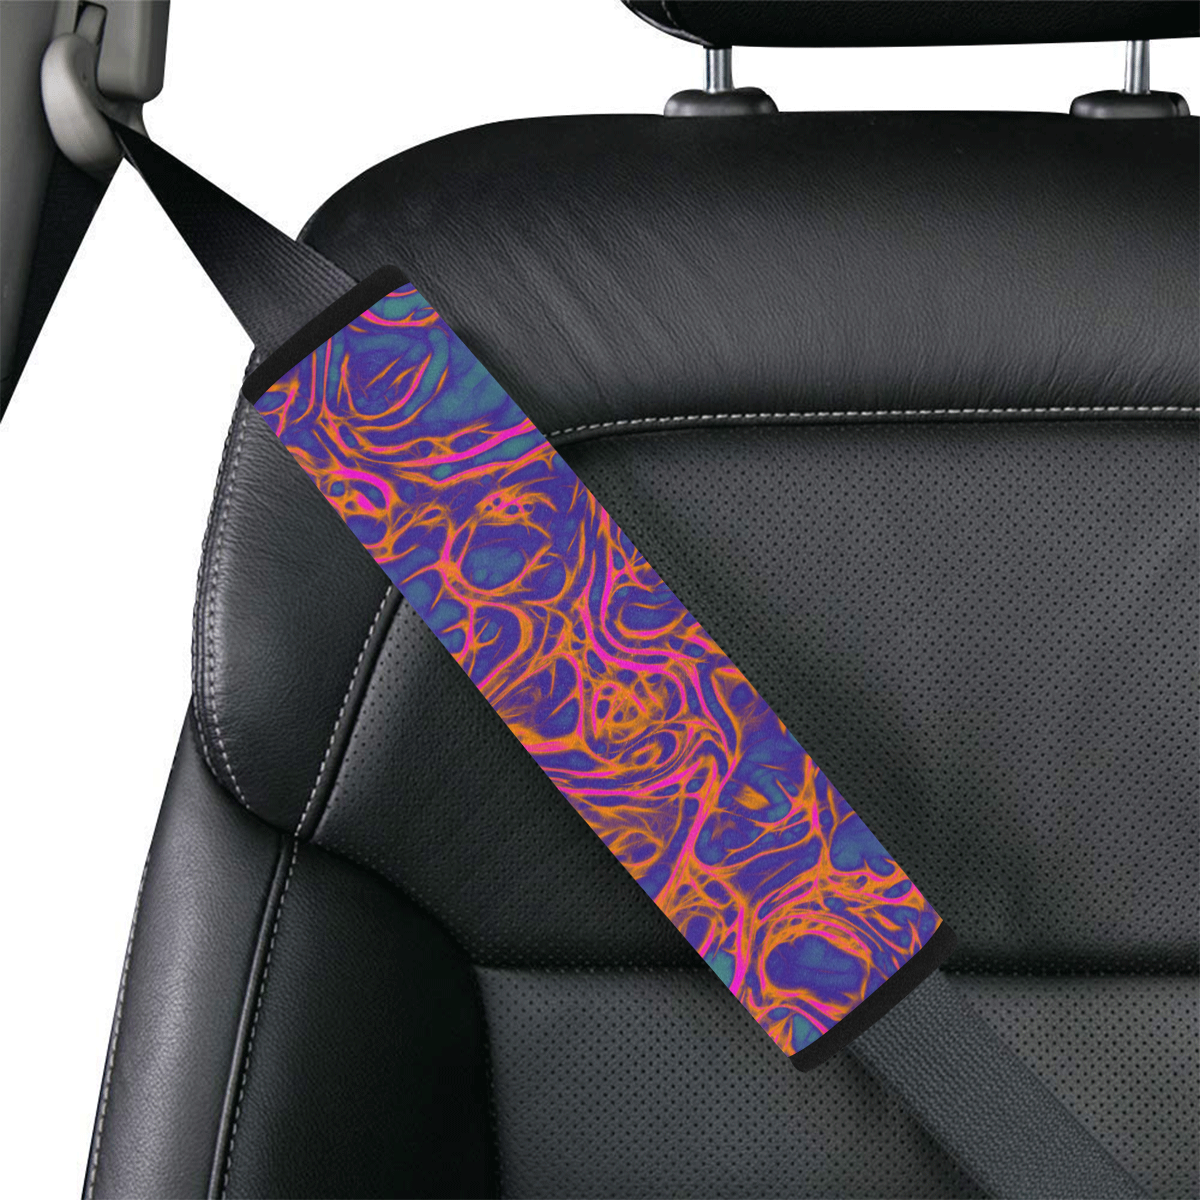 Fractal Batik ART - Hippie Orange Branches Car Seat Belt Cover 7''x12.6''